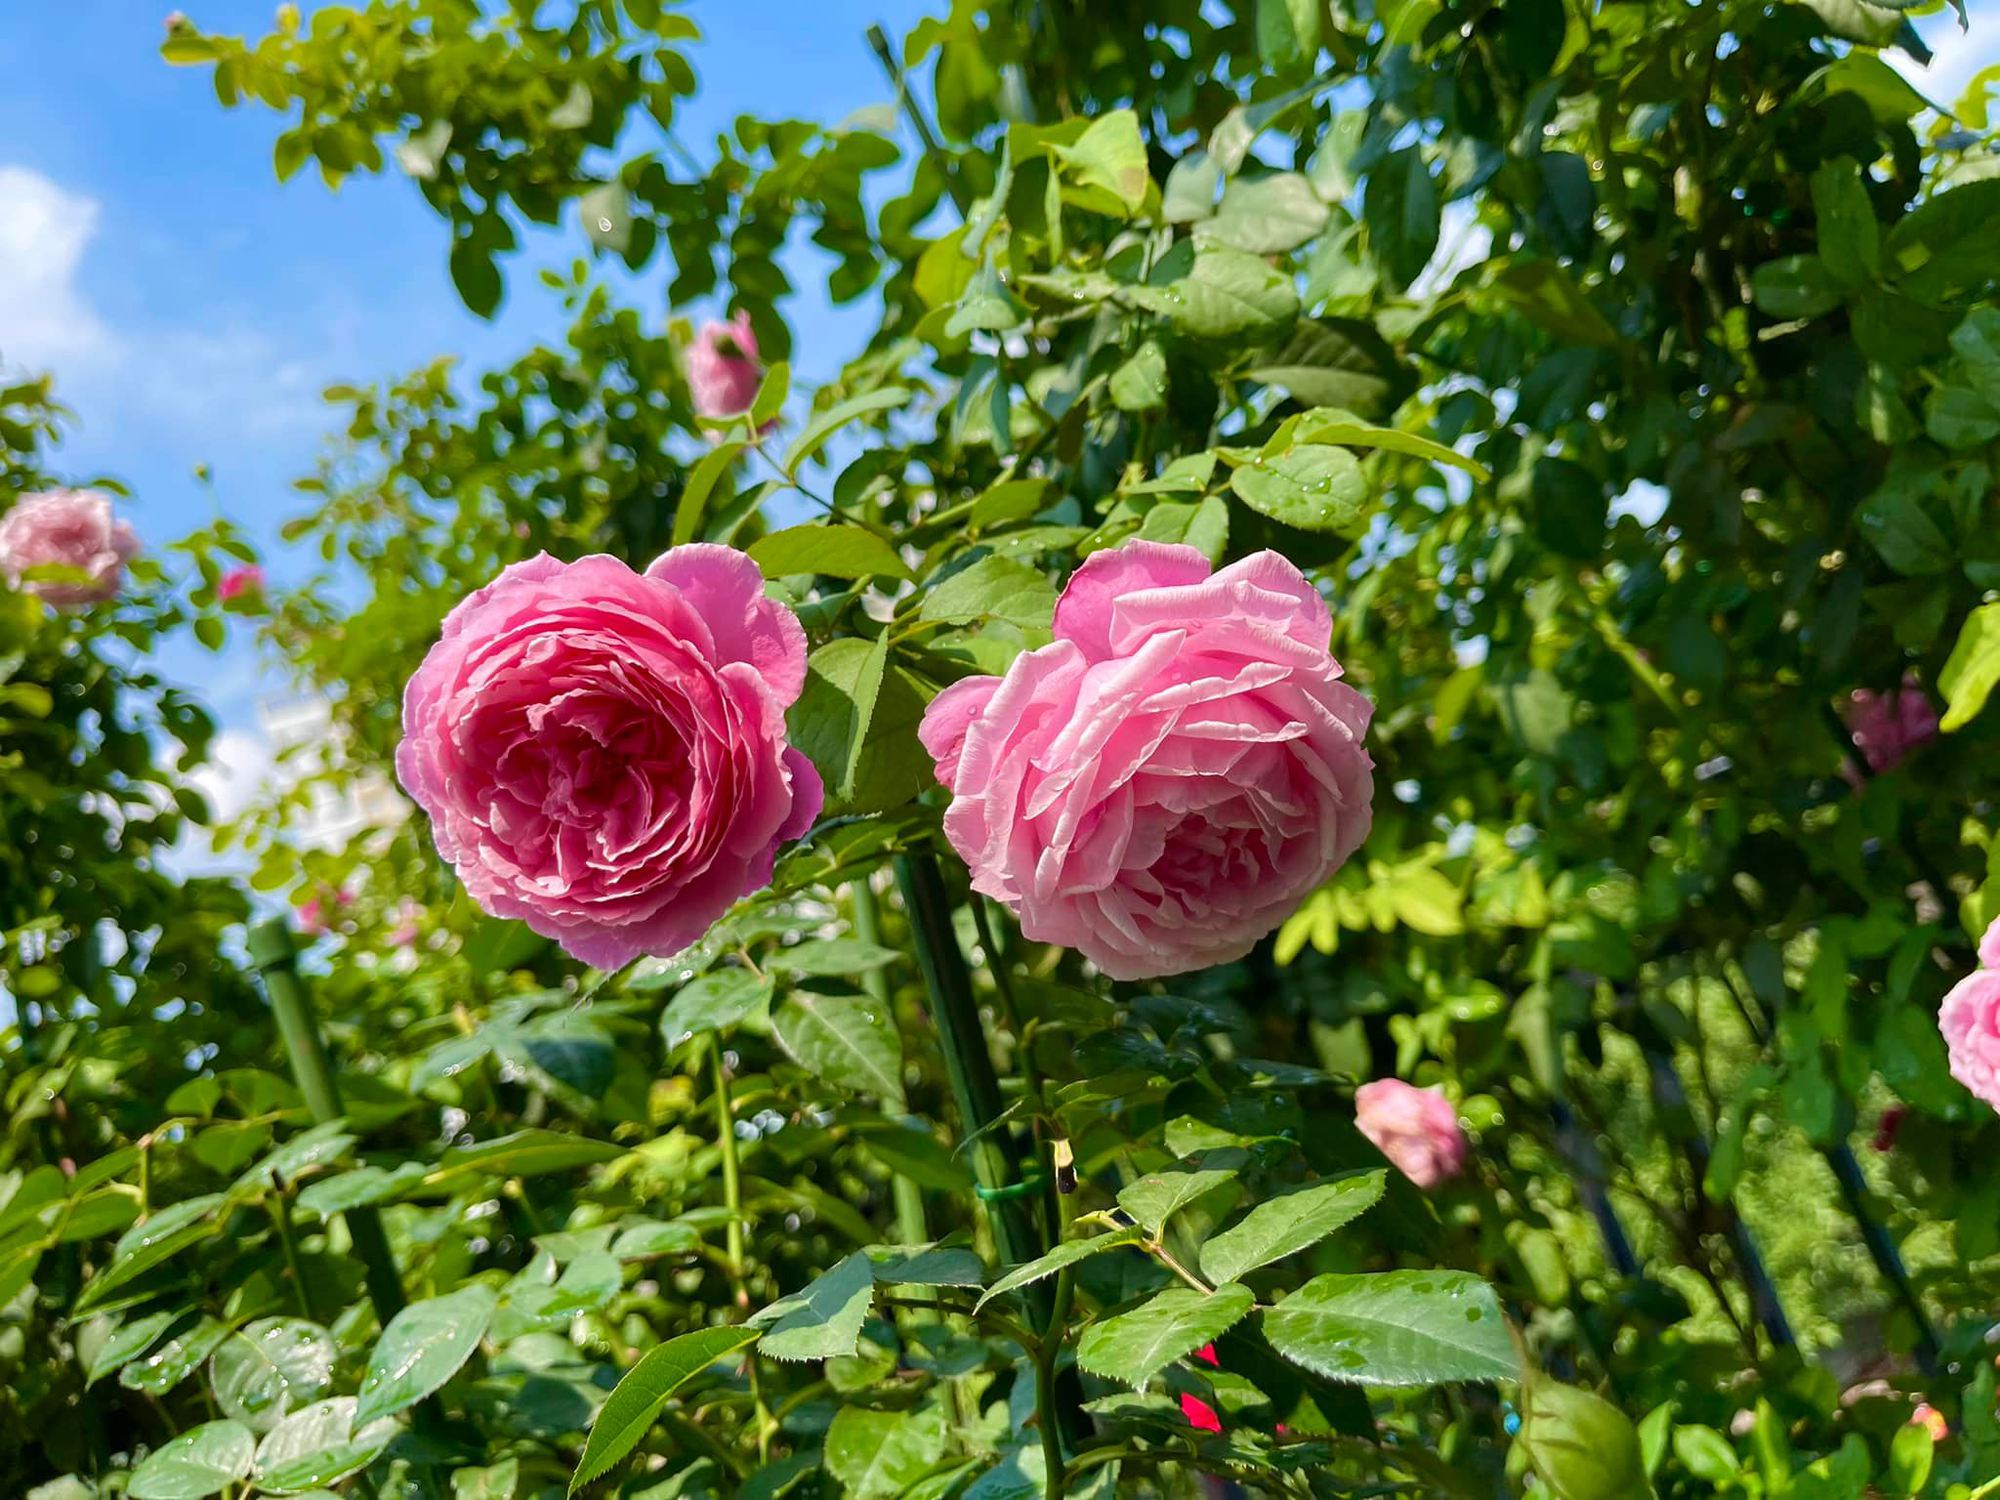 Khu vườn hoa hồng đẹp ngây ngất trên sân thượng ở TP HCM - Ảnh 8.